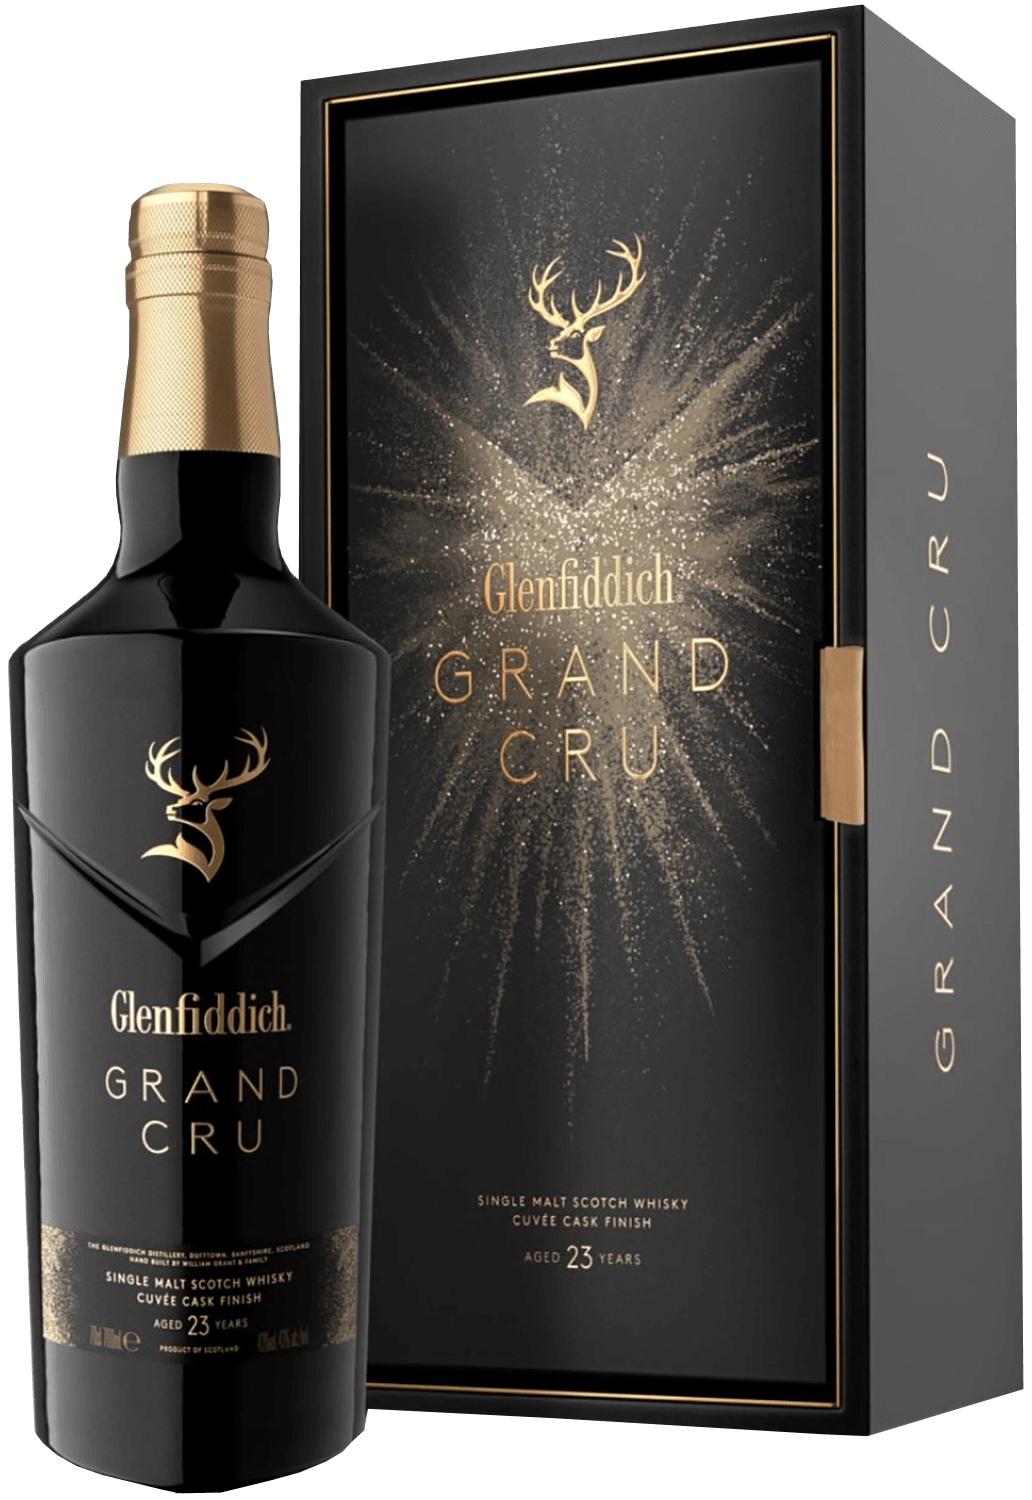 Glenfiddich Grand Cru 23 y.o. Single Malt Scotch Whisky (gift box) glenfiddich single malt scotch whisky 15 yo gift box